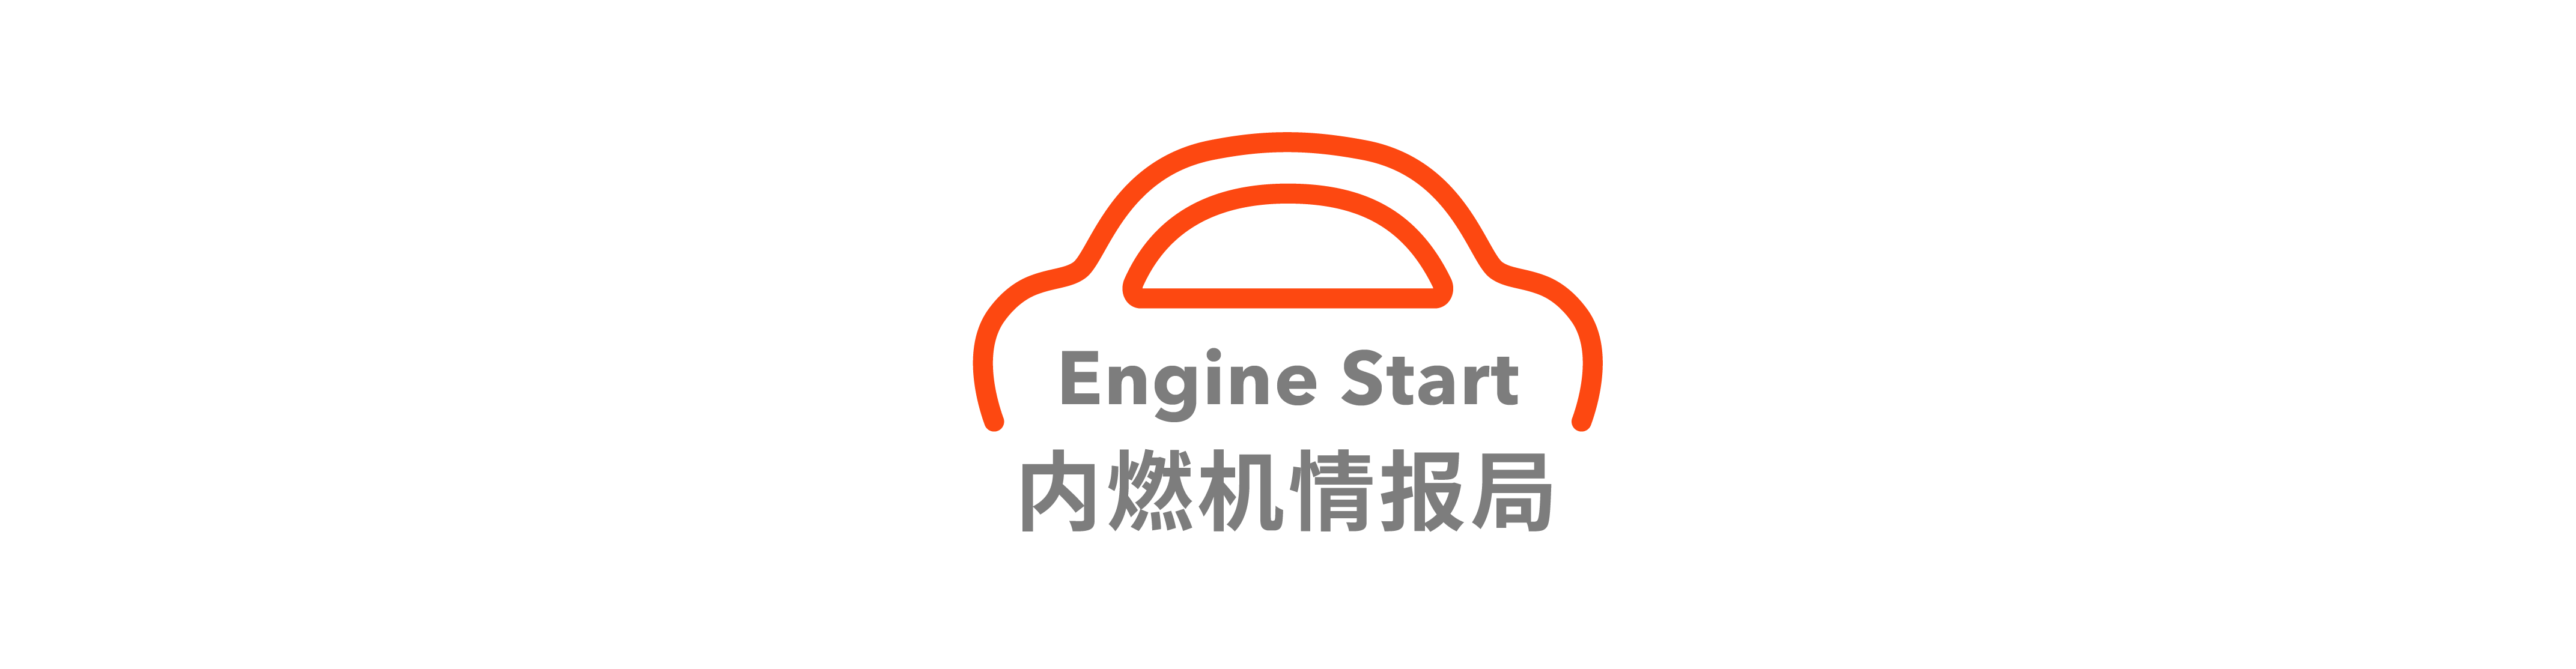 22 - Xiaomi Snow Test Exposure / FF ha firmato un accordo strategico con la città di Huanggang / Debutto della Corvette E-Ray